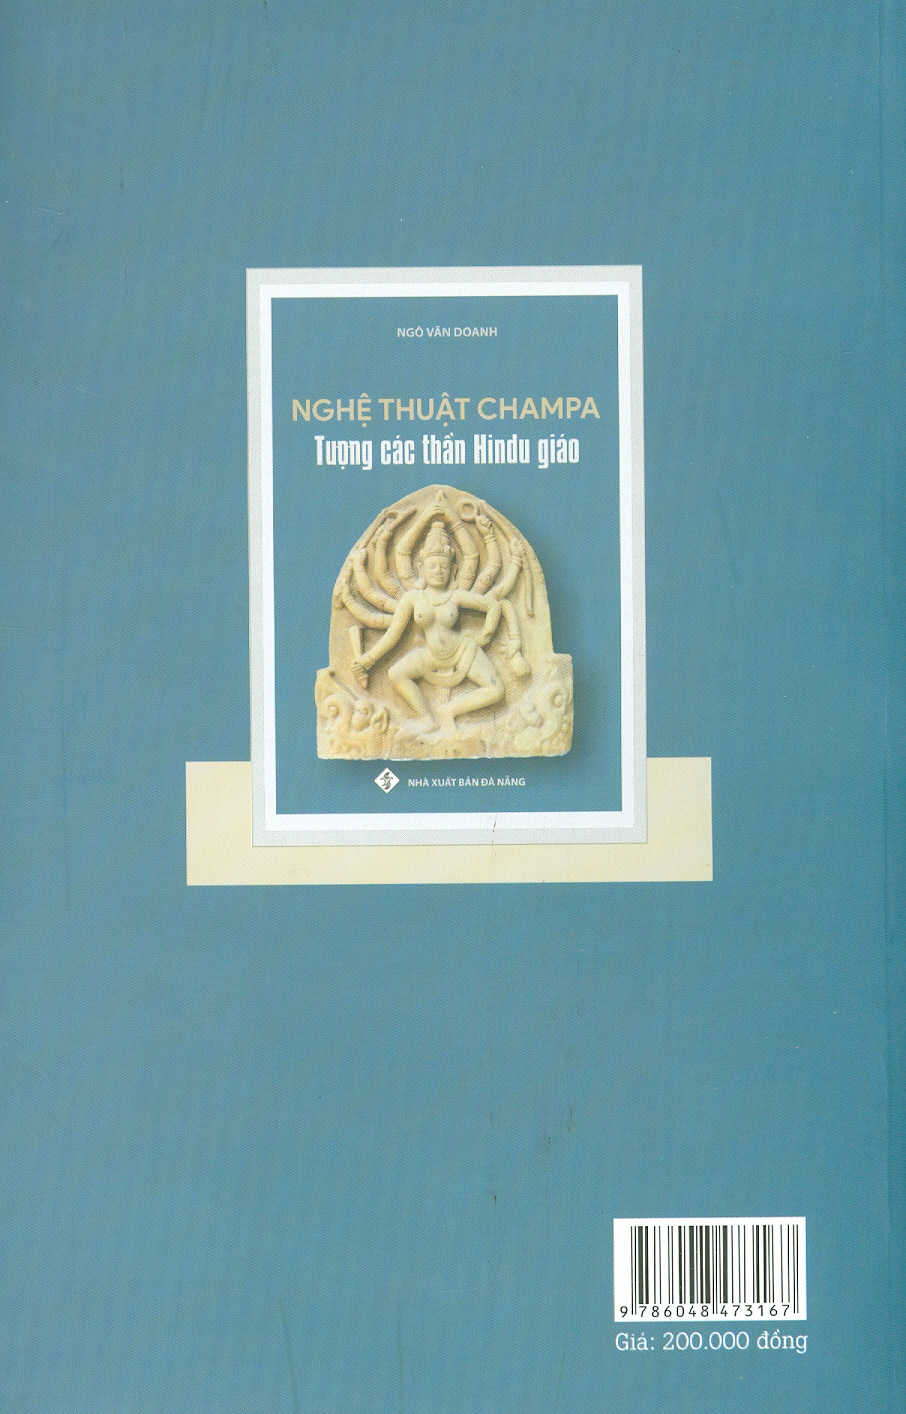 NGHỆ THUẬT CHAMPA - Tượng Các Thần Hindu Giáo - Ngô Văn Doanh - (bìa mềm)